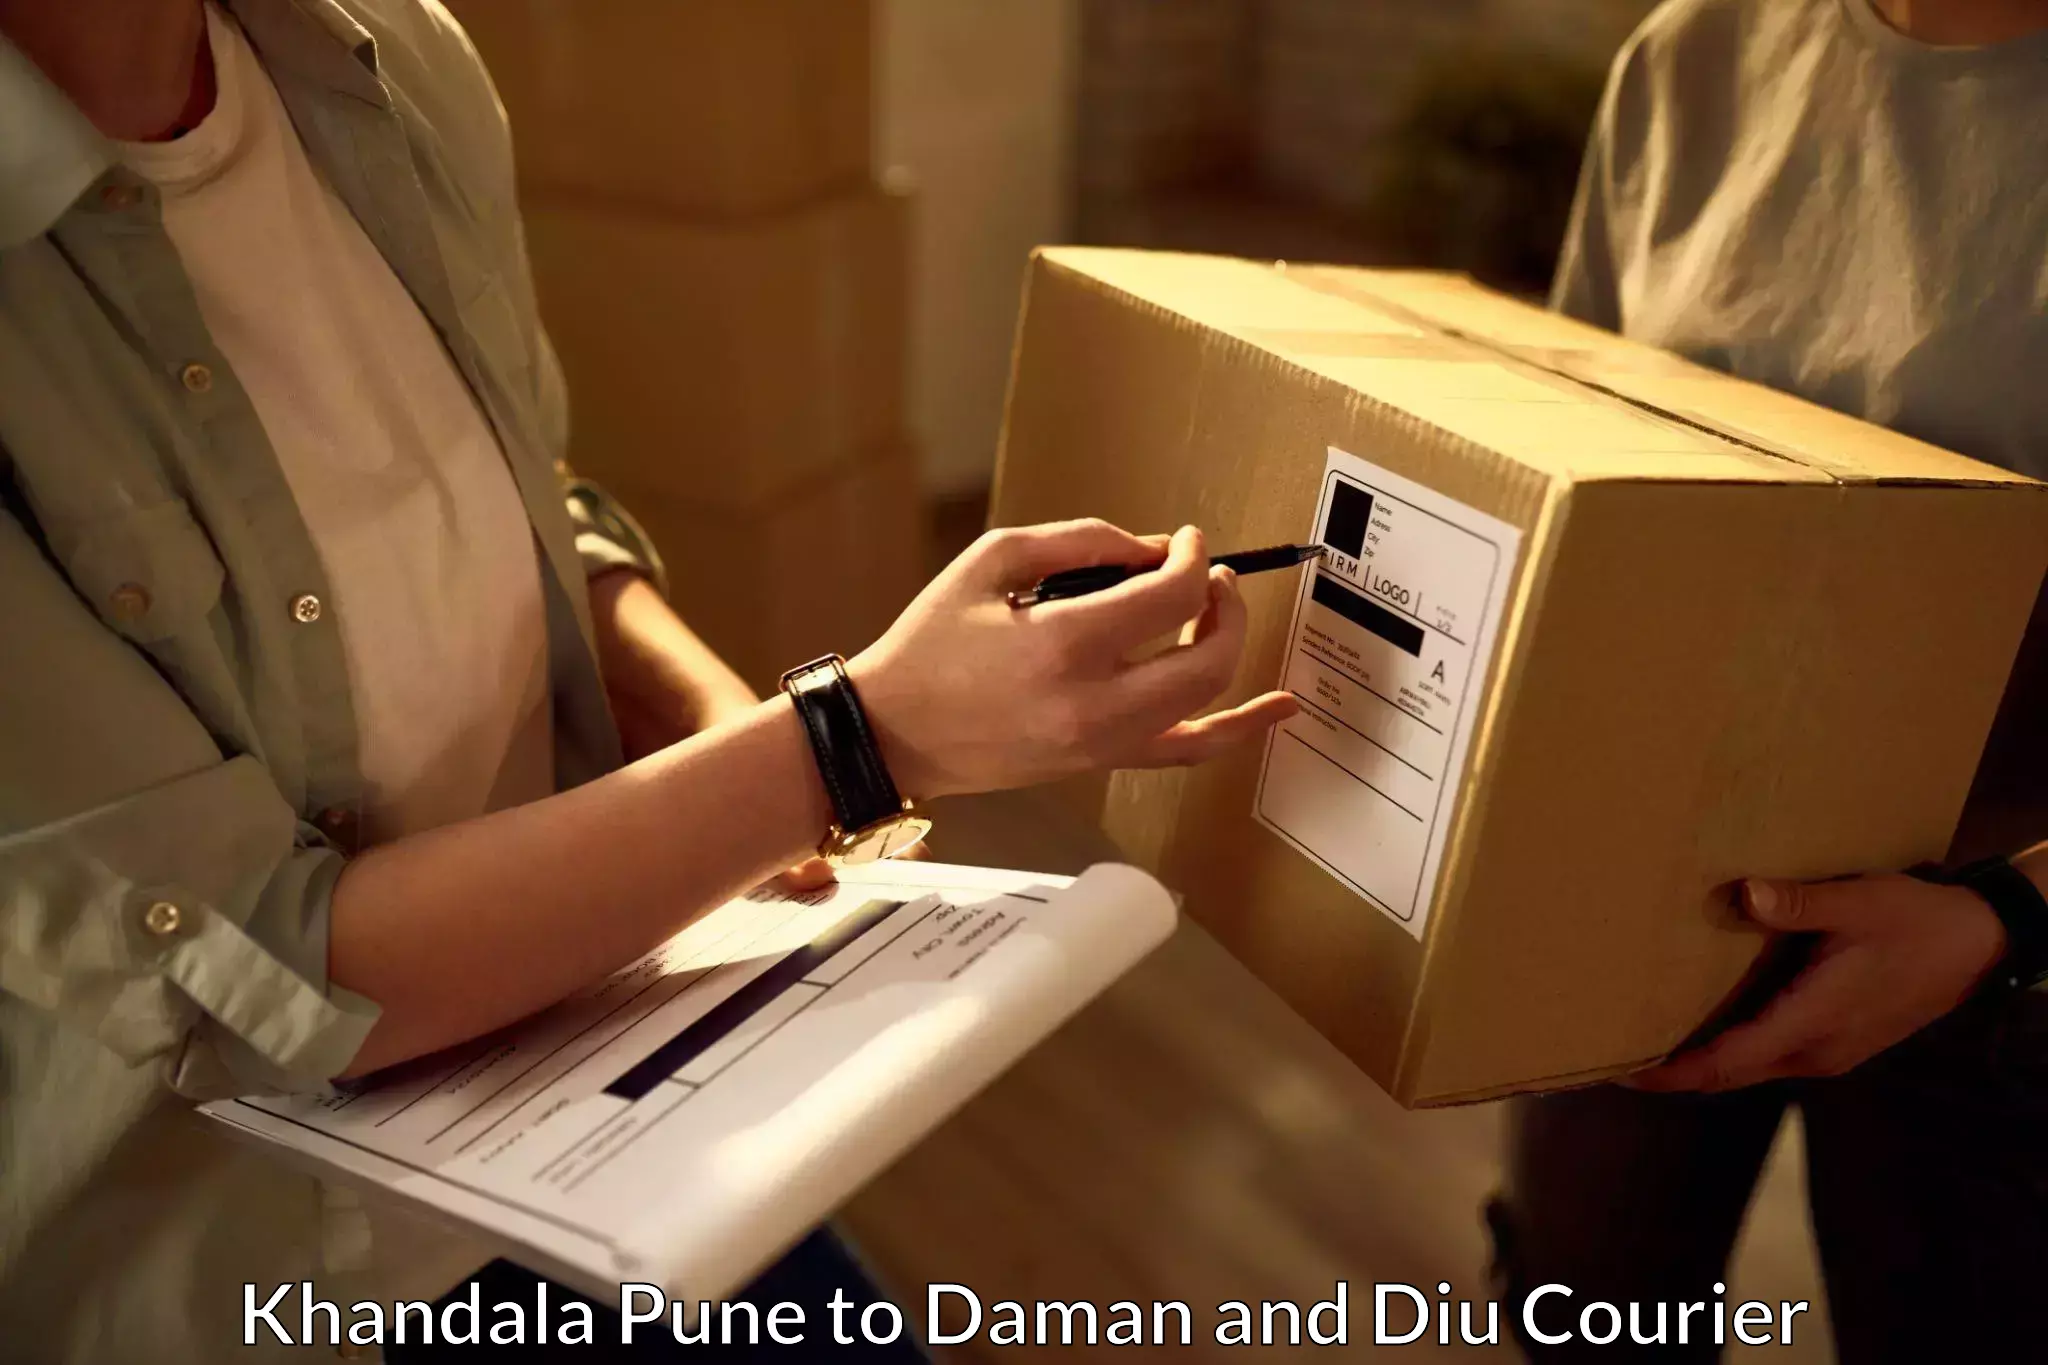 Budget-friendly shipping in Khandala Pune to Daman and Diu